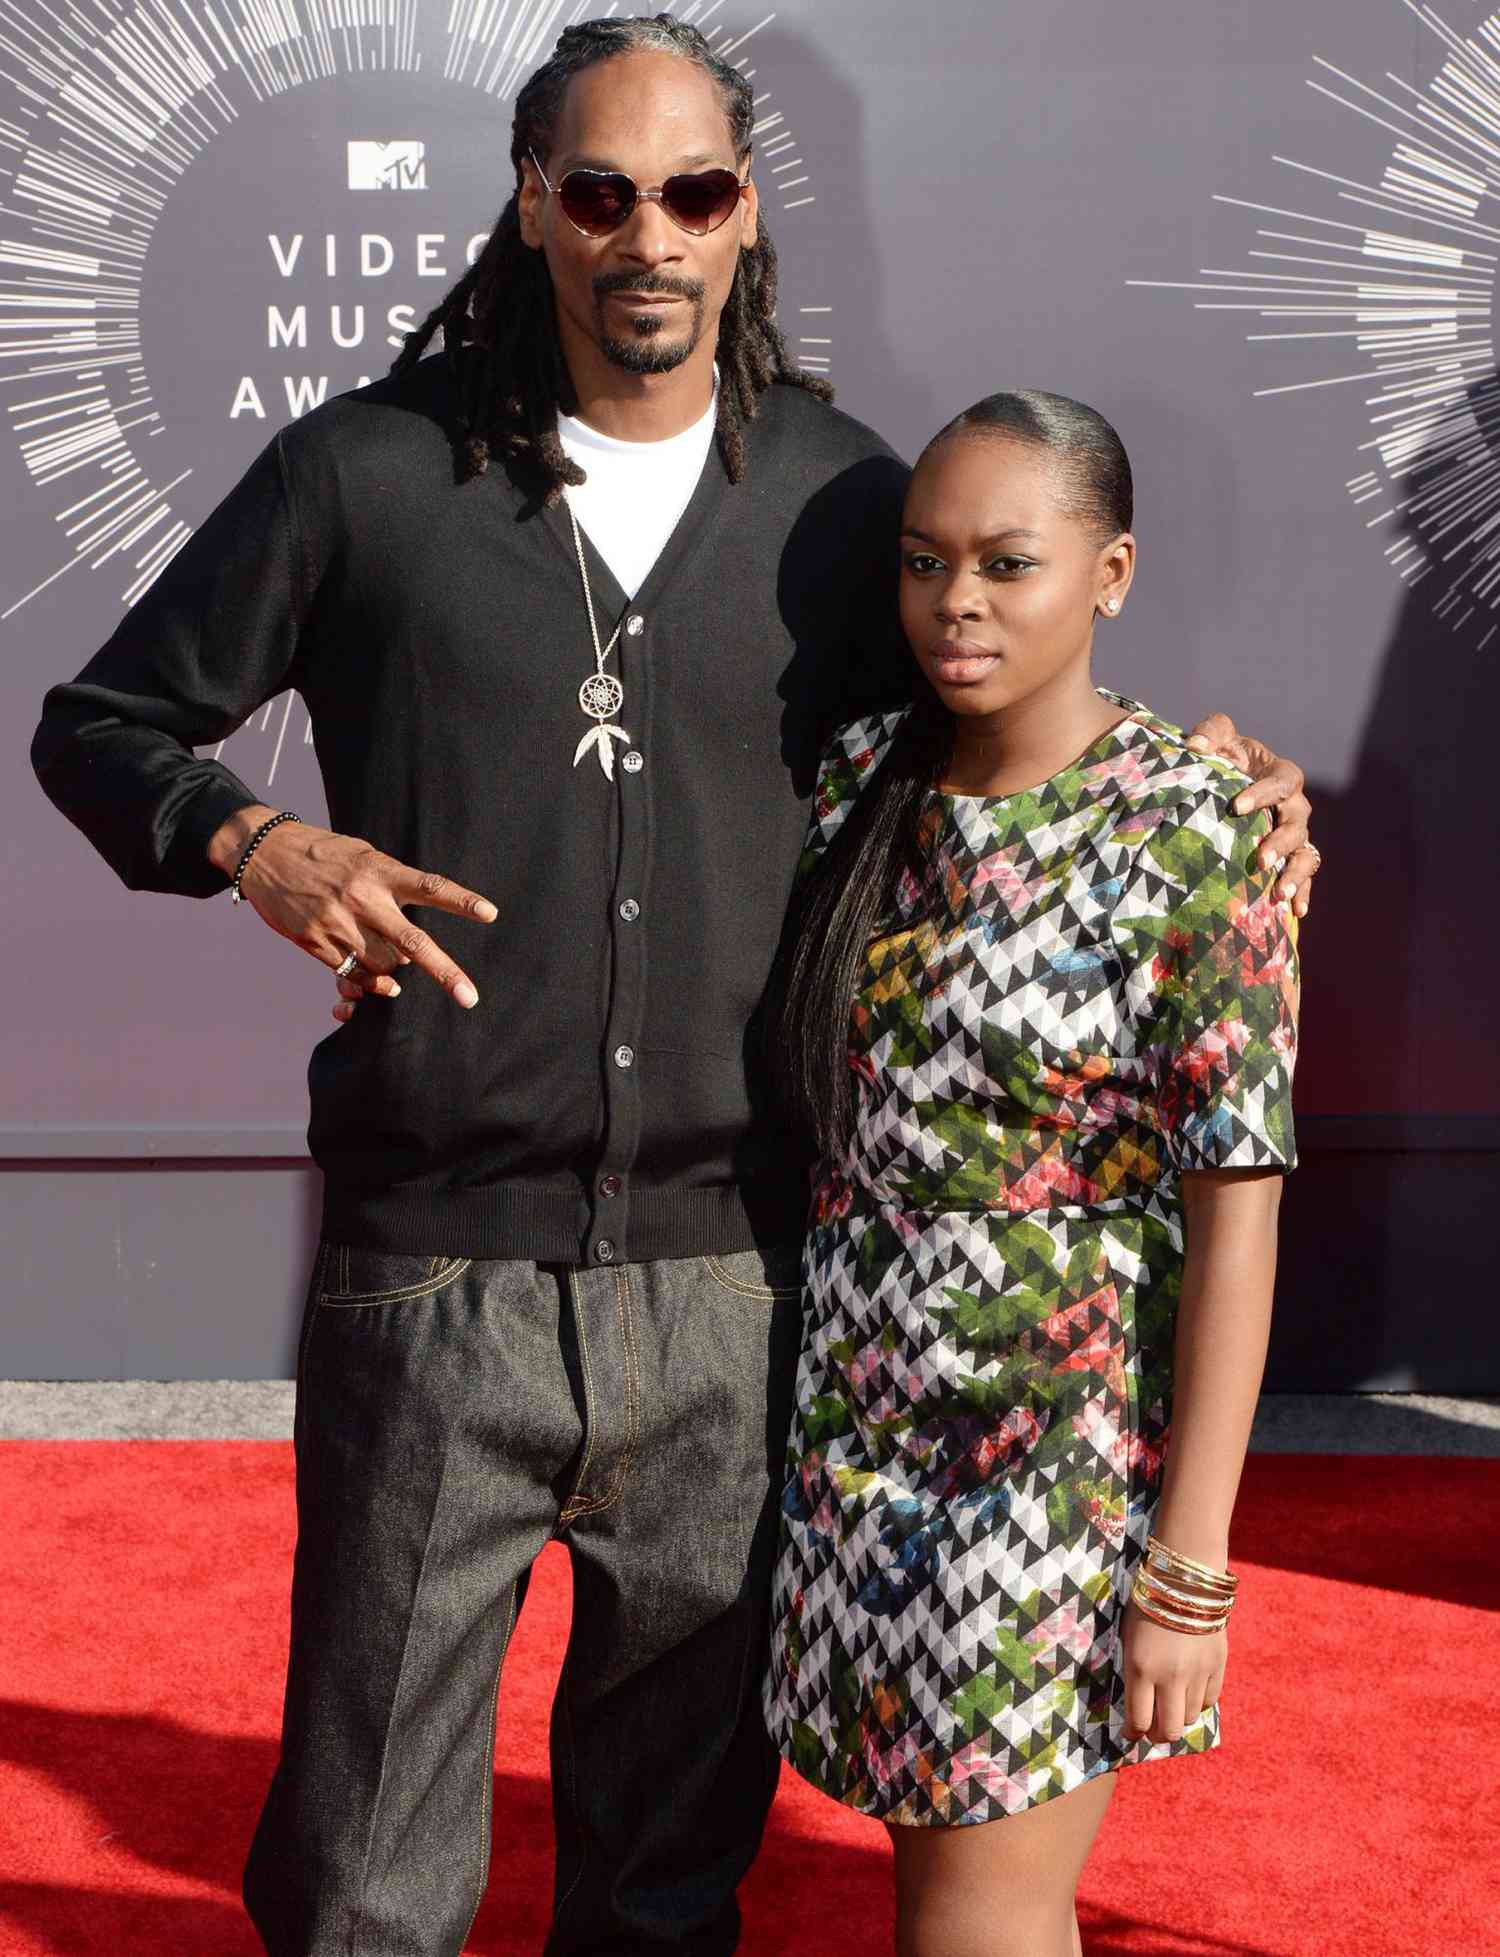 Snoop Doggs Datter Cori taler om Mental sundhed efter selvmordsforsøg: 'Sætter pris på dit liv'